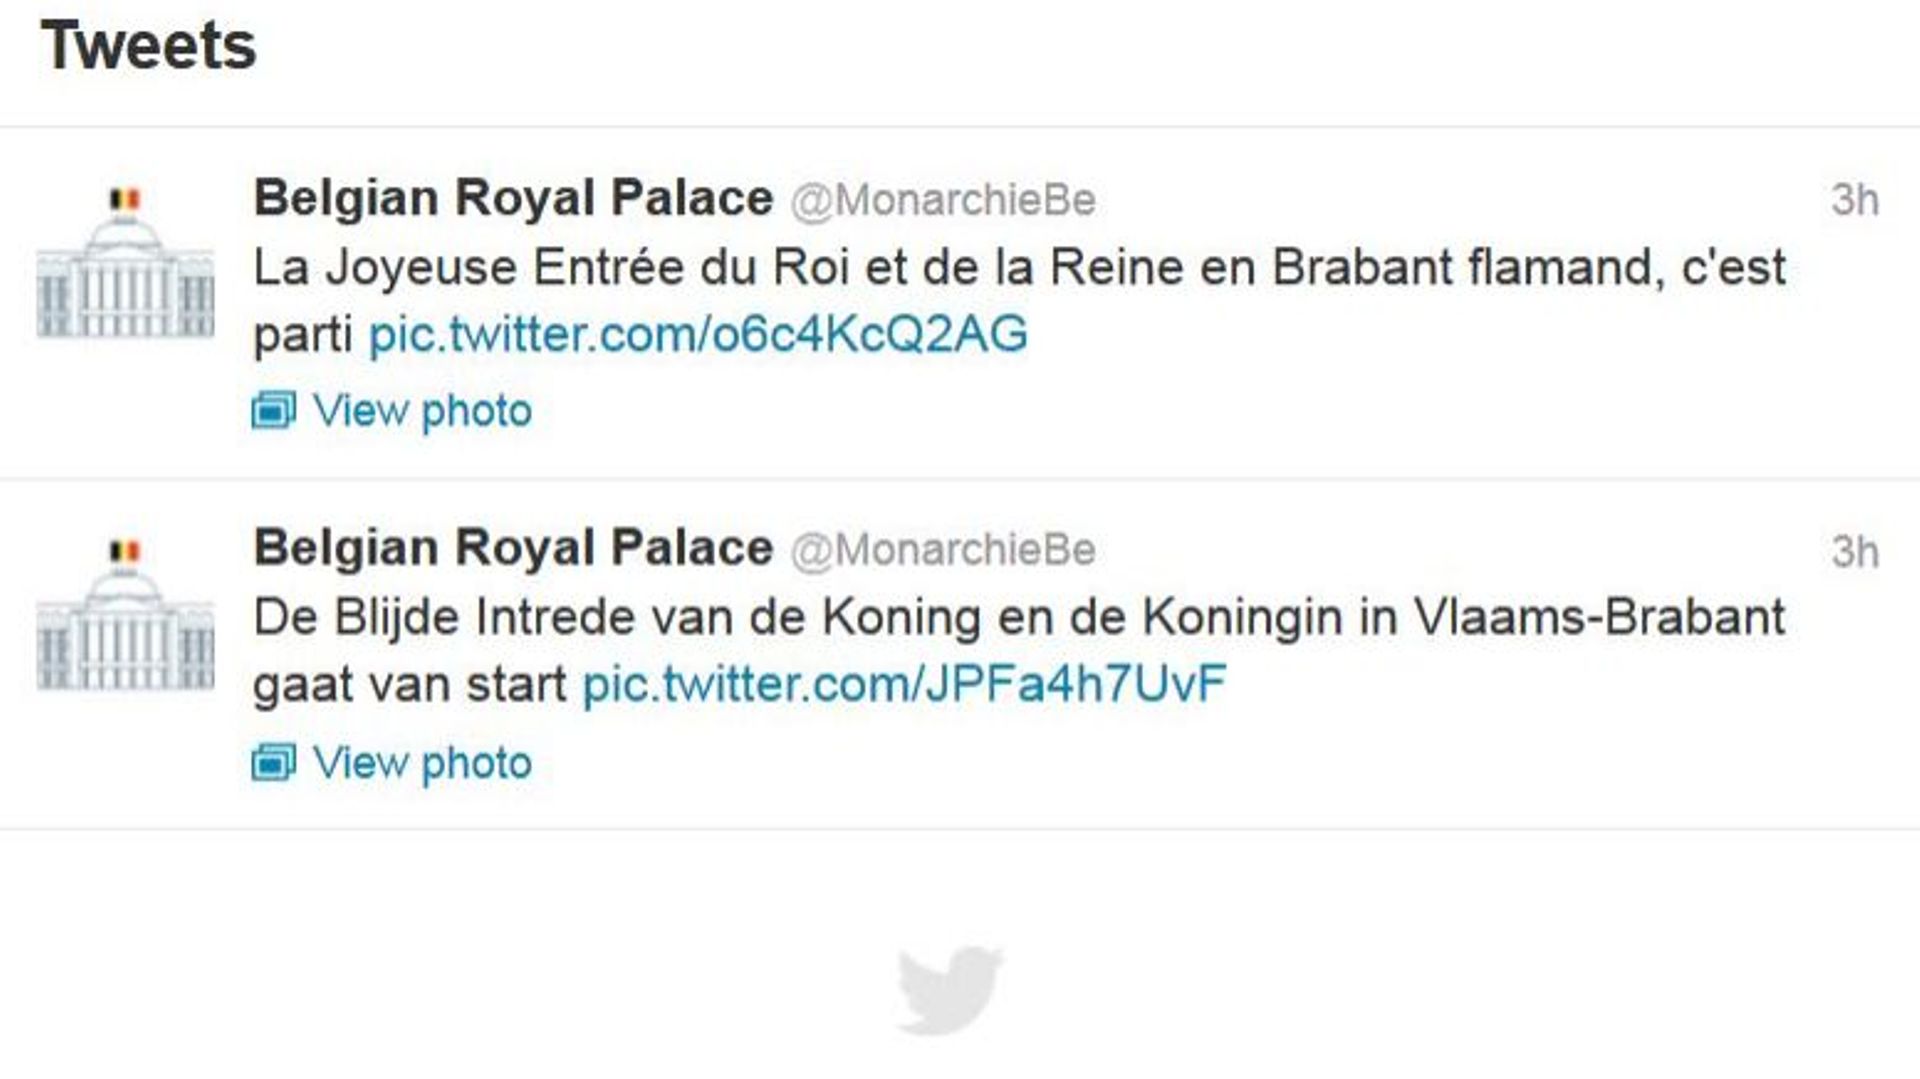 Le couple royal a aussi fait sa joyeuse entrée sur Twitter